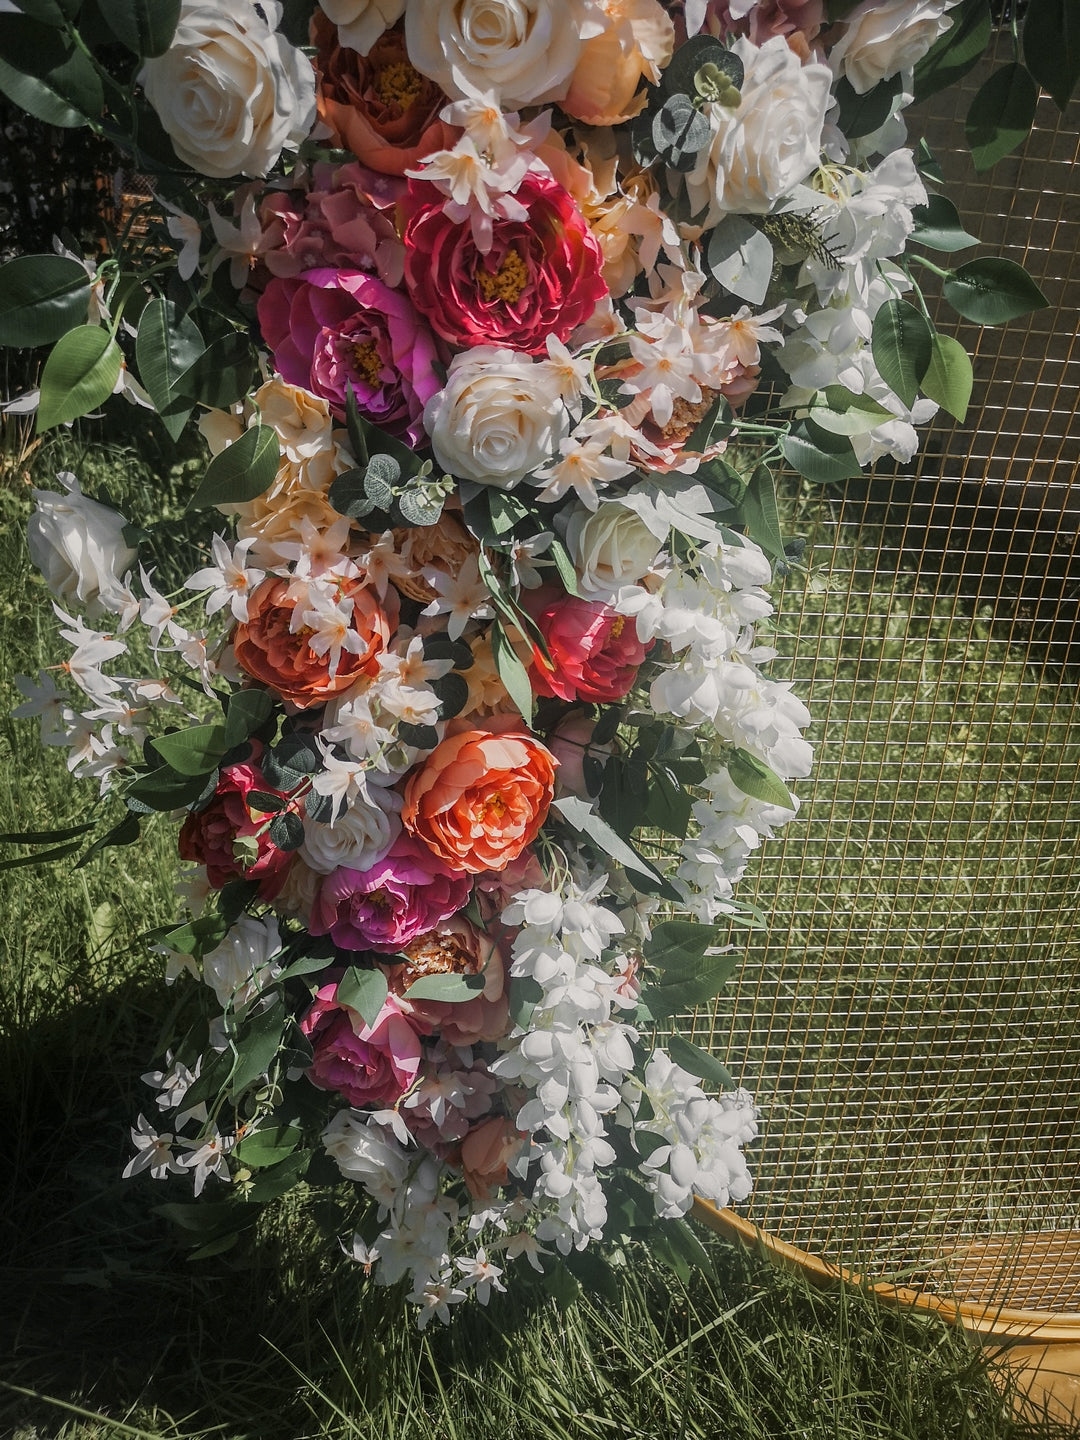 
                  
                    Silk flowers | floral arches | pastel colors
                  
                